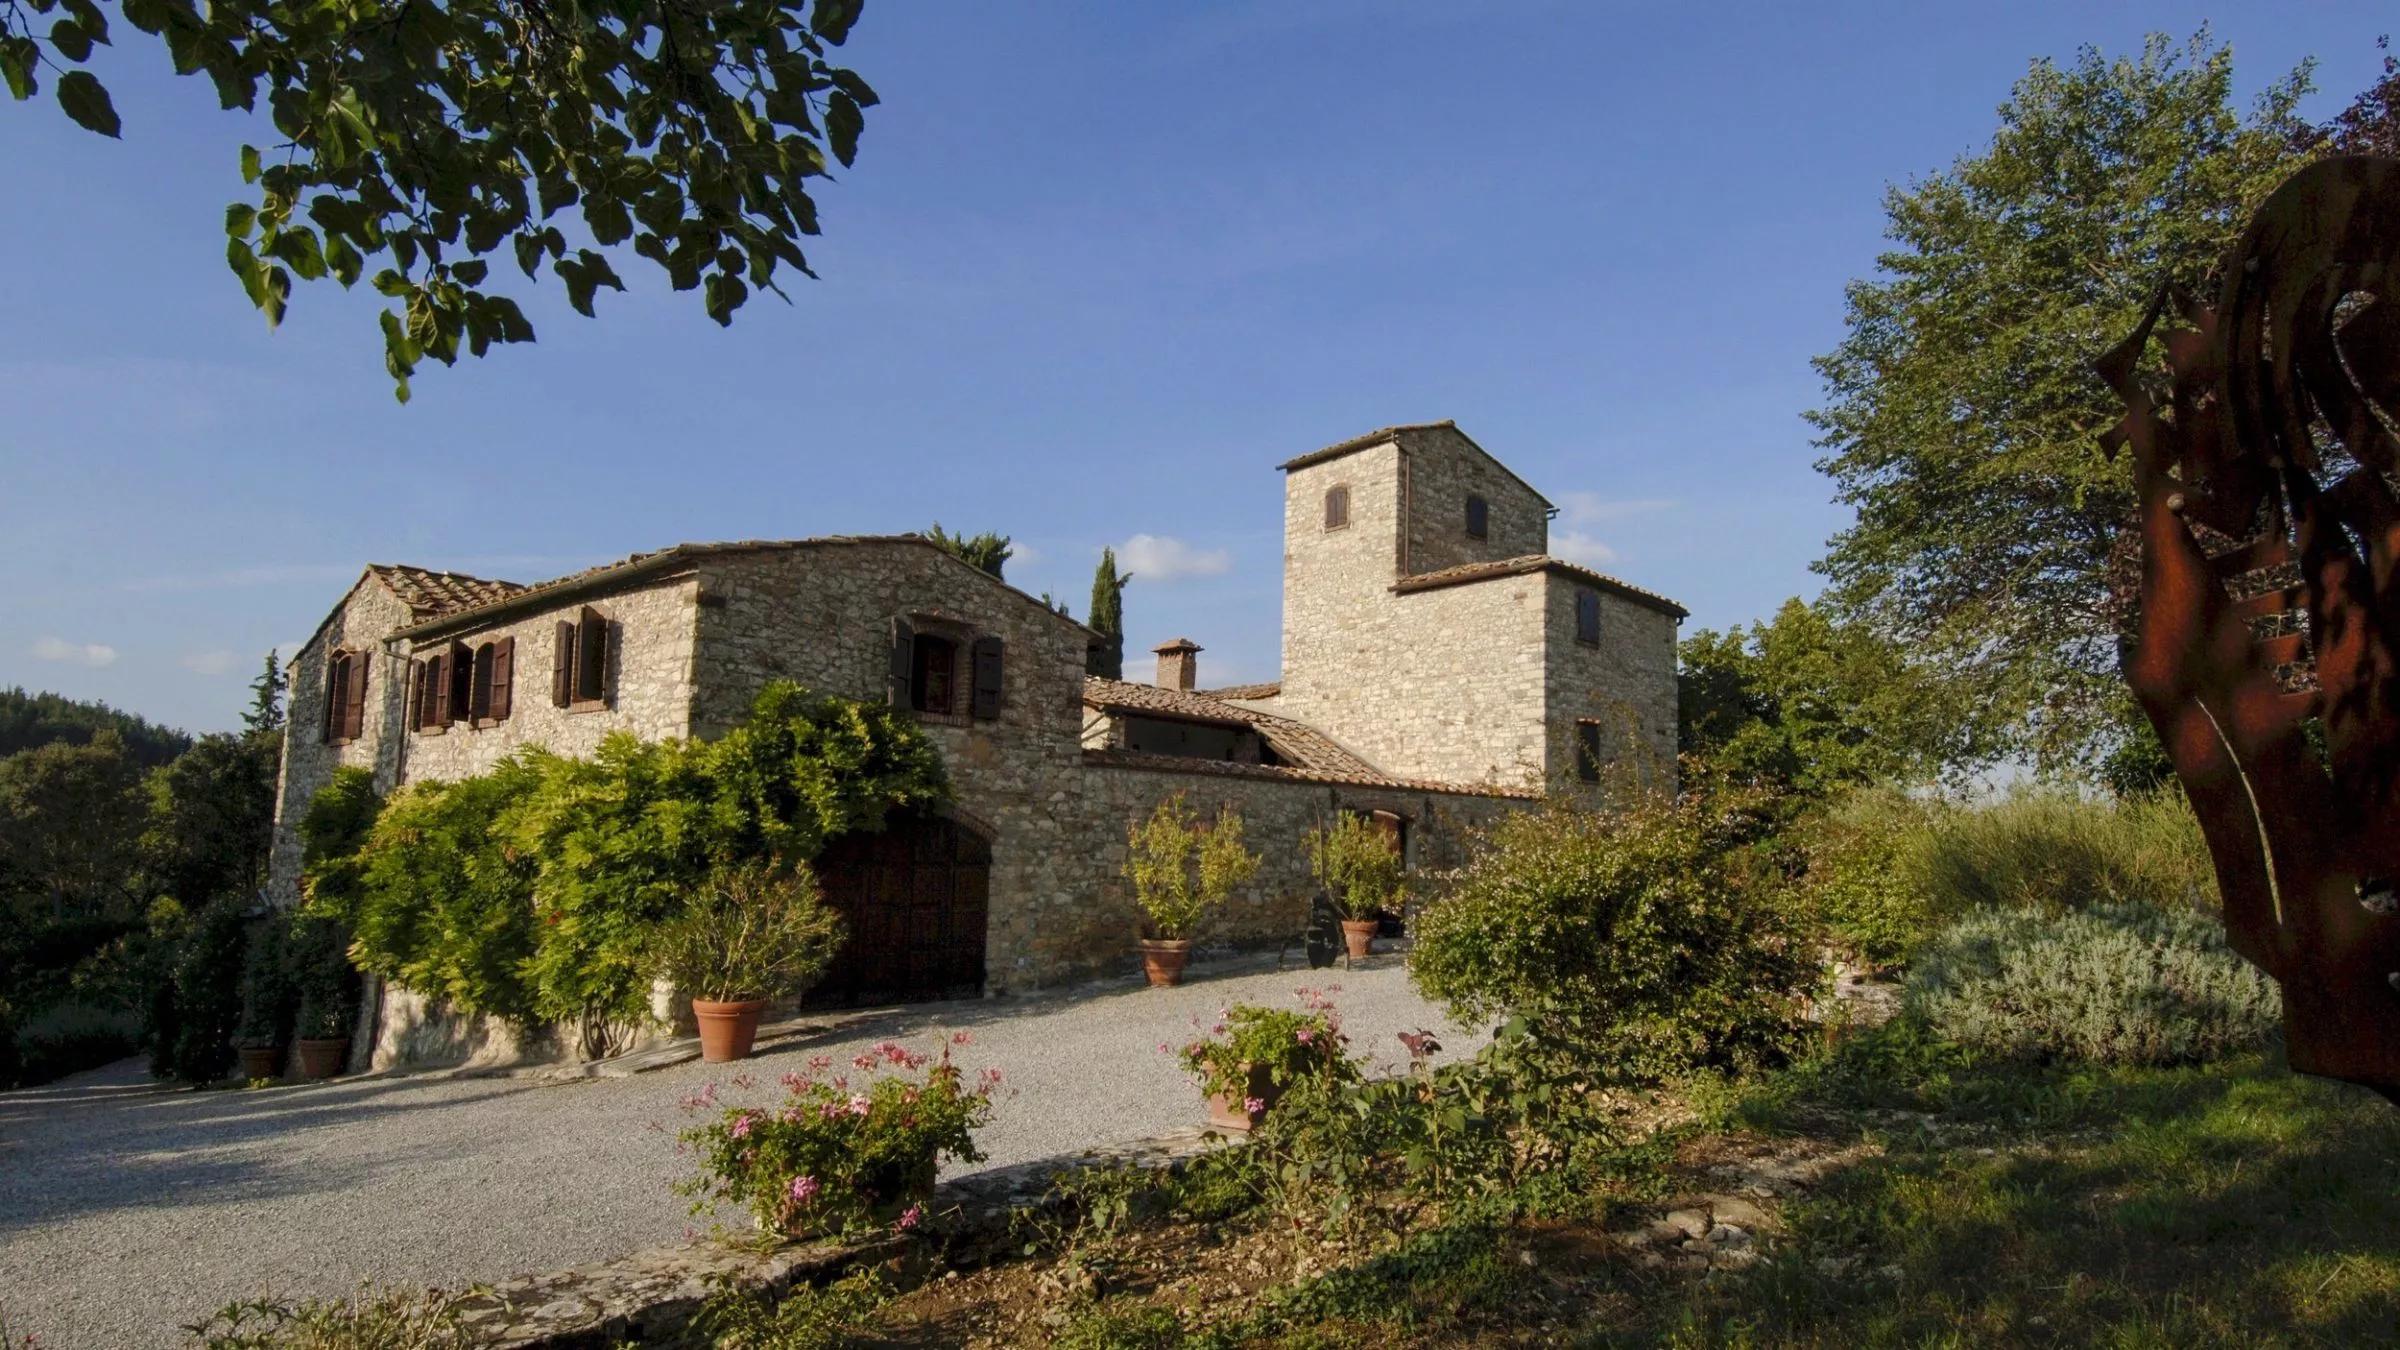 Seit 1992 steht der modernisierte Keller des Weinguts Nittardi auf einem Hügel inmitten des Chianti. Bereits 1183 soll hier nach eigenen Angaben ein Wehrturm mit Namen „Nectar Dei“ die waldige Landschaft überragt haben